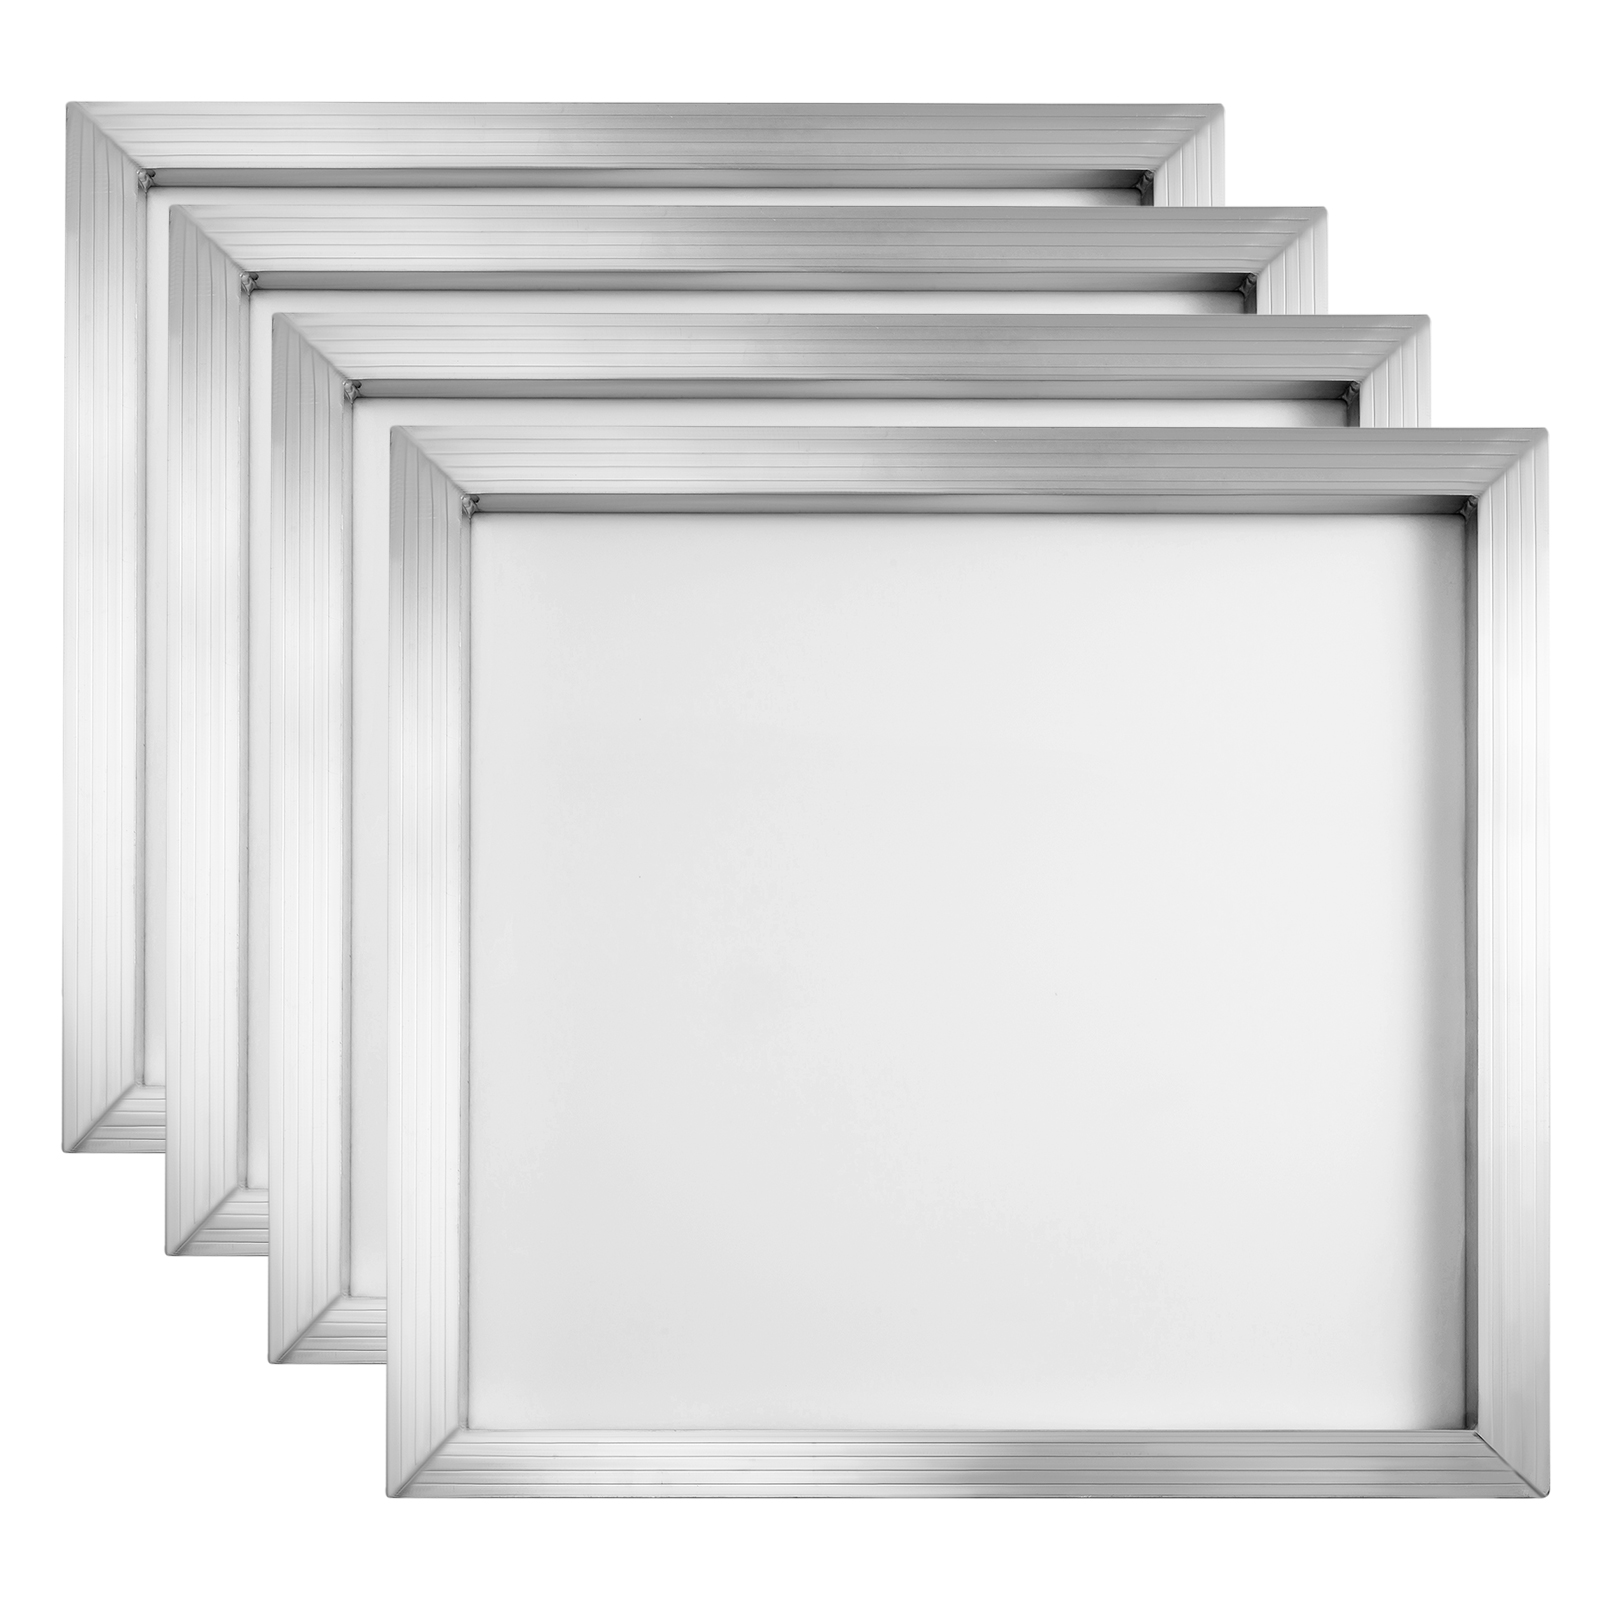 aluminum silkscreen frames